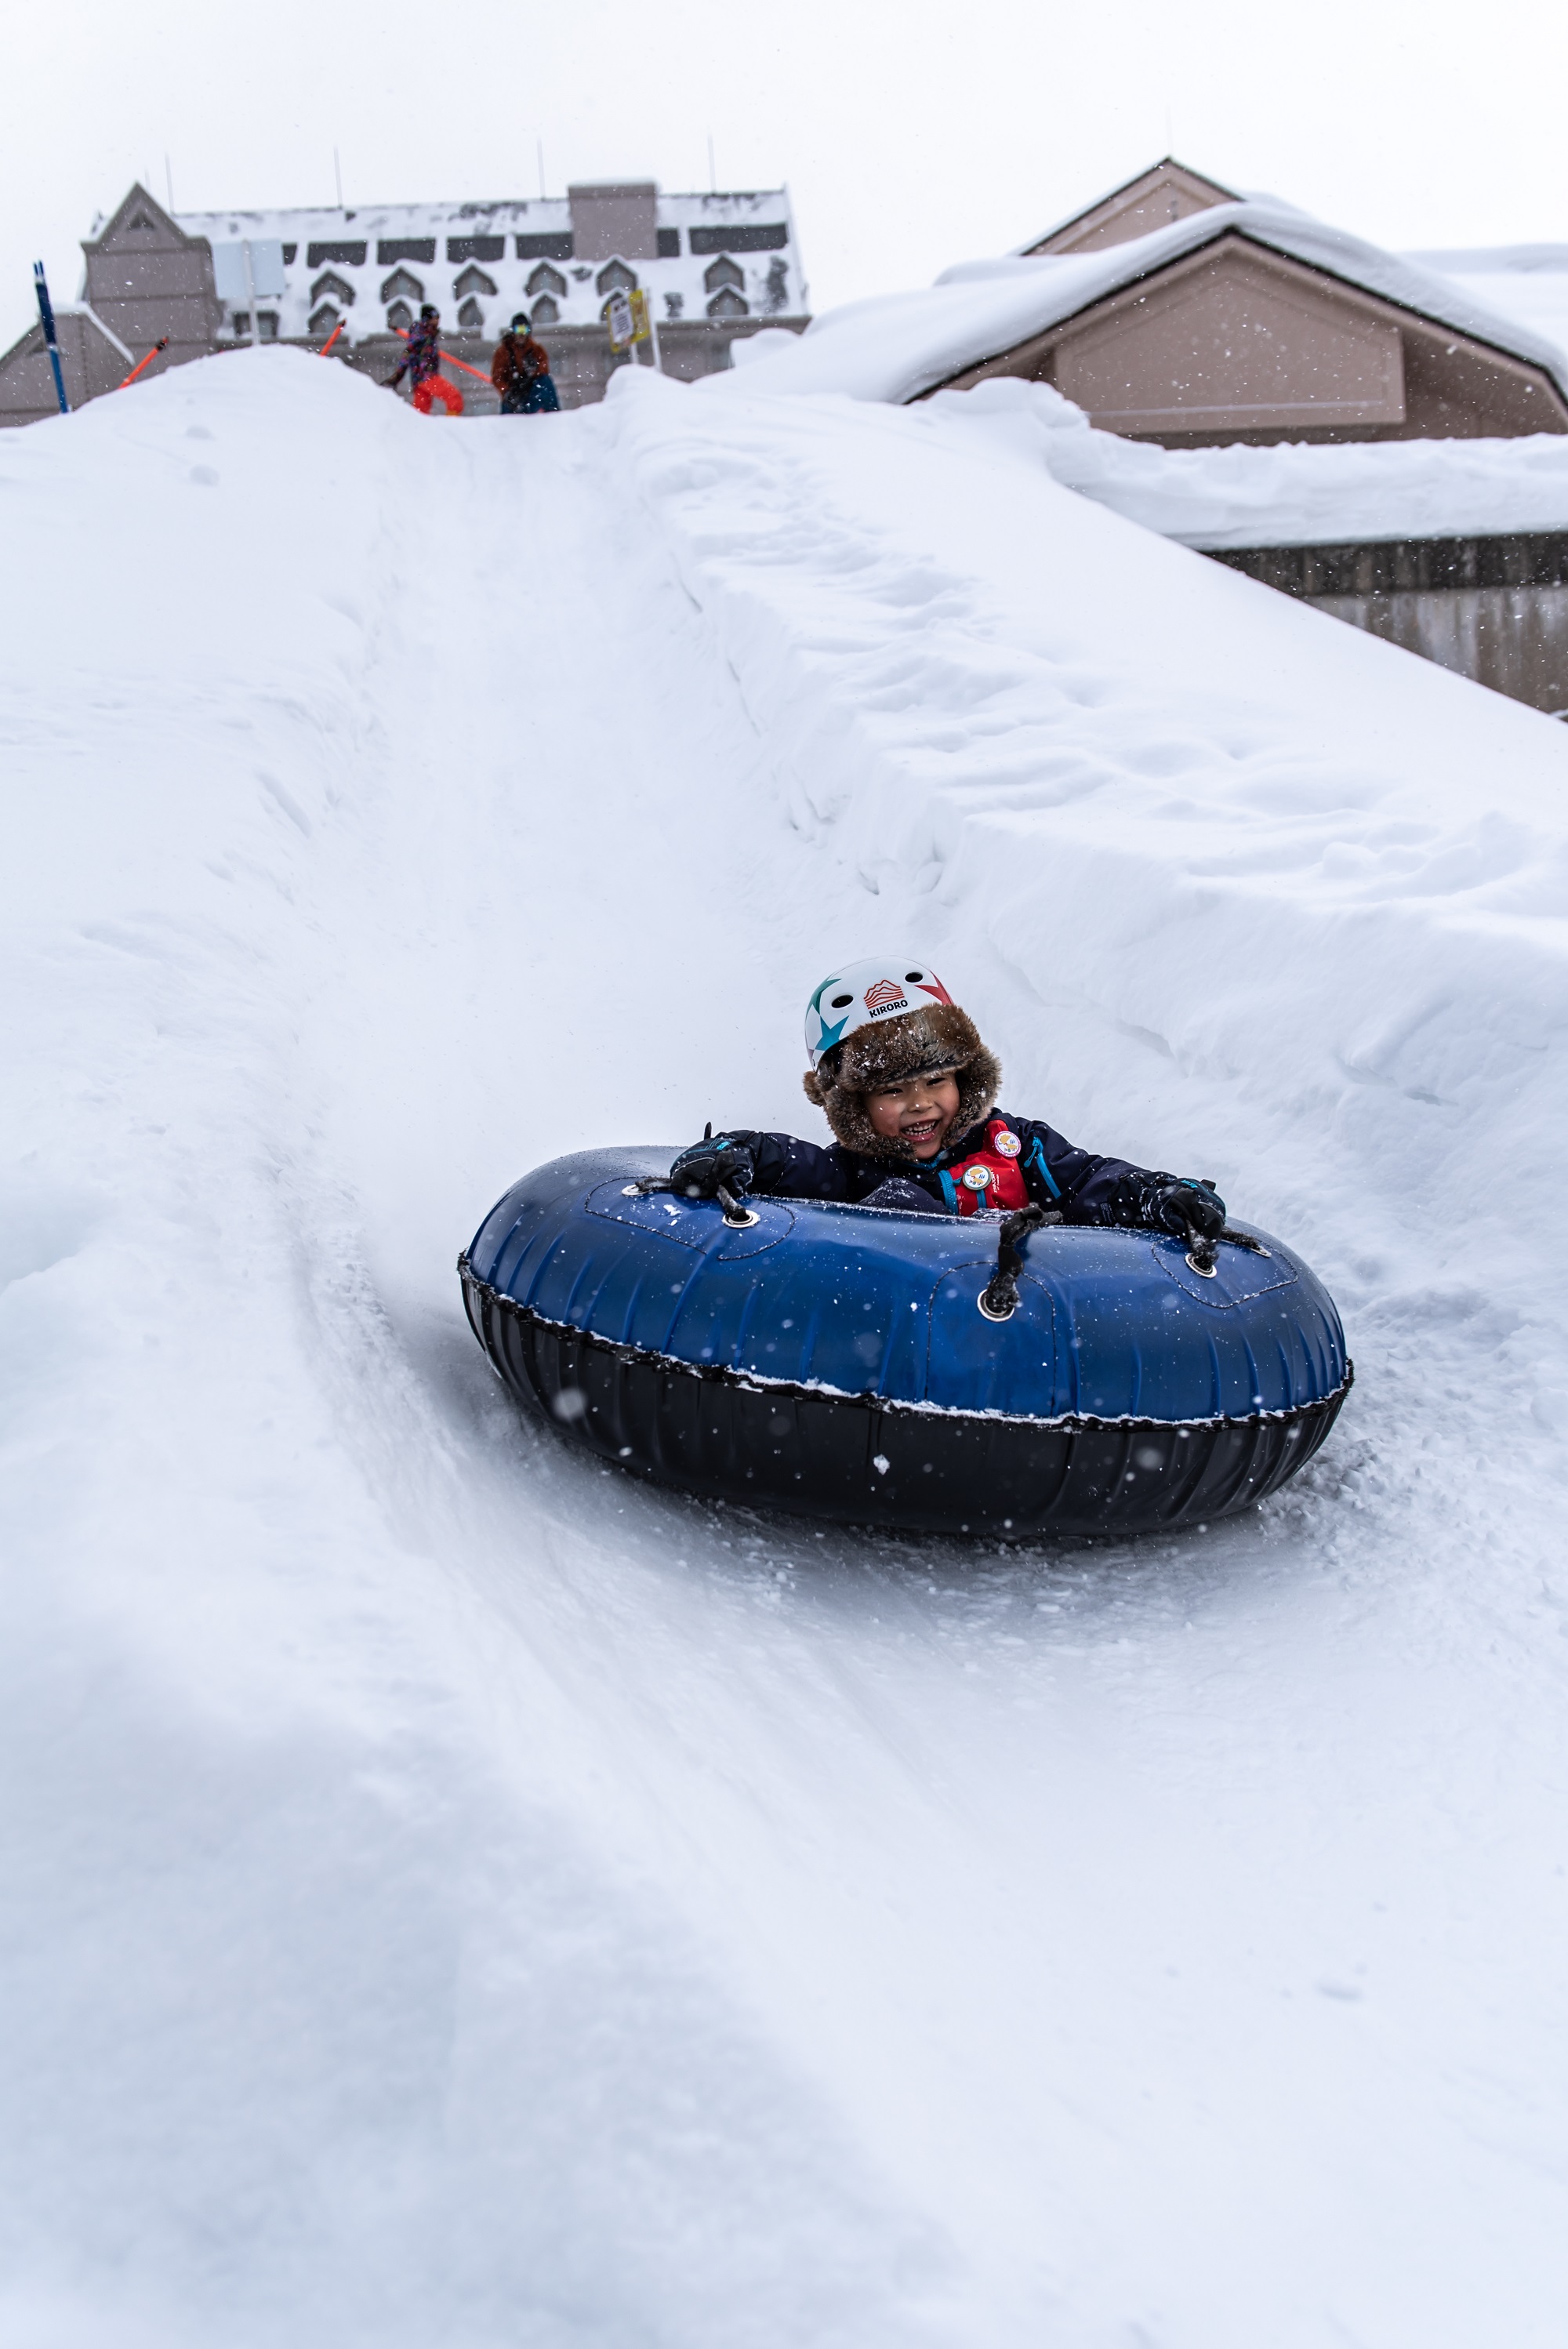 Fun Activities Things To Do In The Winter Kiroro Ski Resort